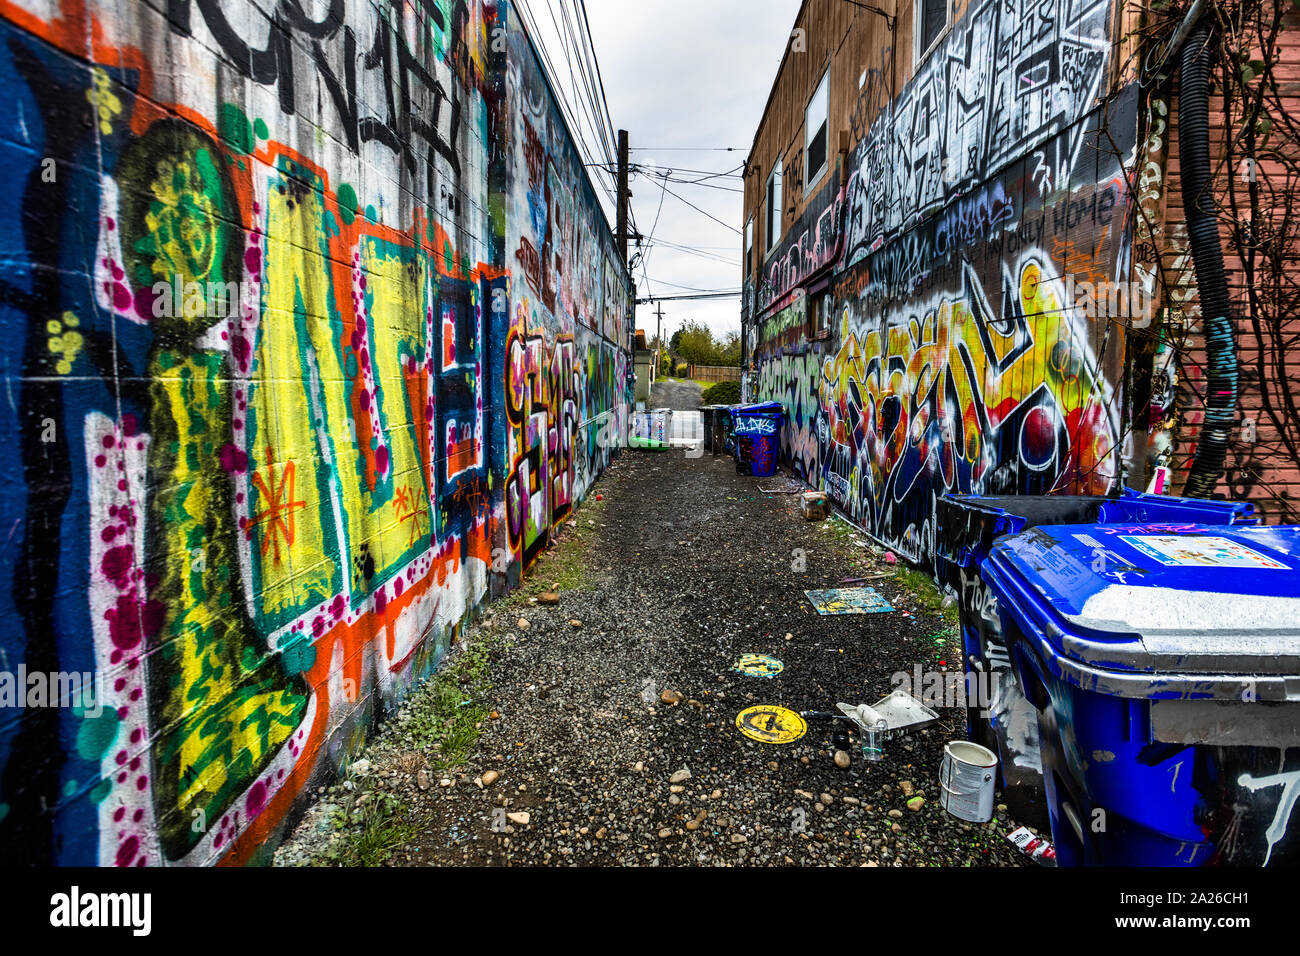 Graffiti filled alley in the Alberta Arts District, Portland, Oregon, USA Stock Photo